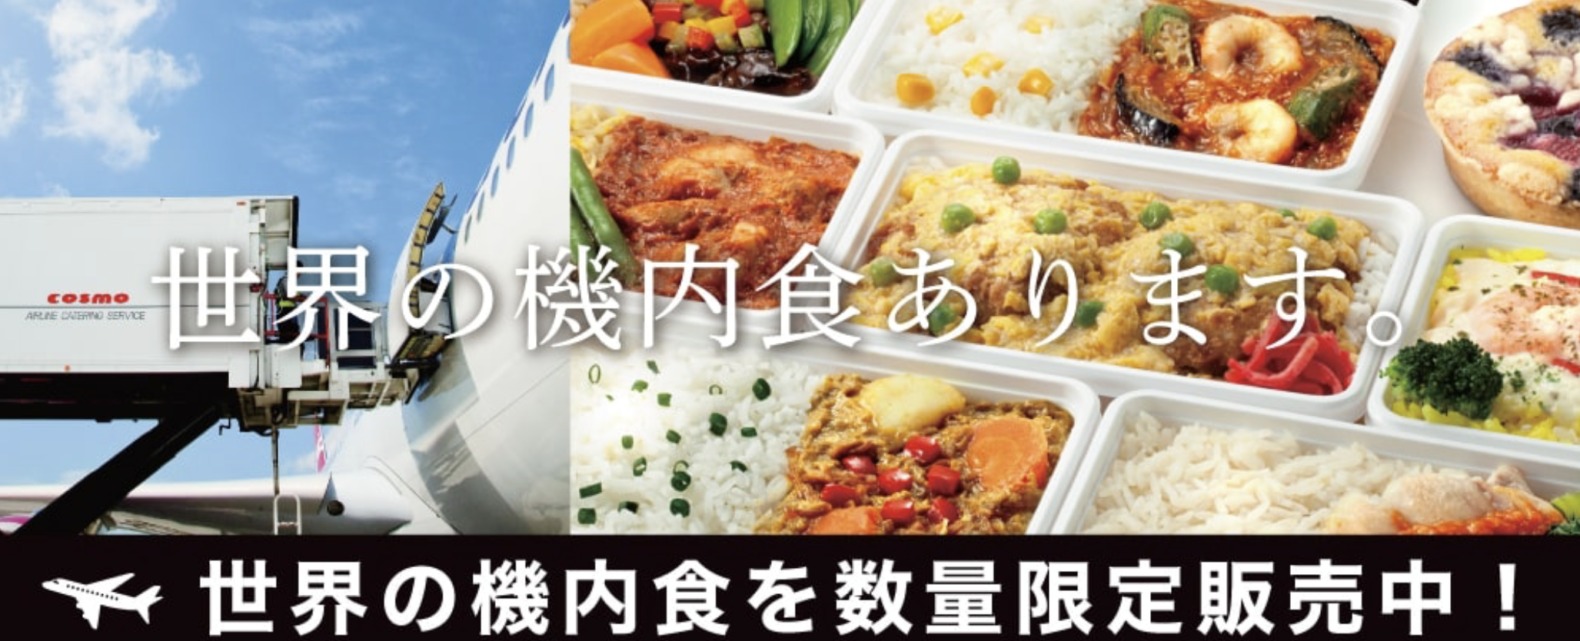 羽田空港「世界の機内食」